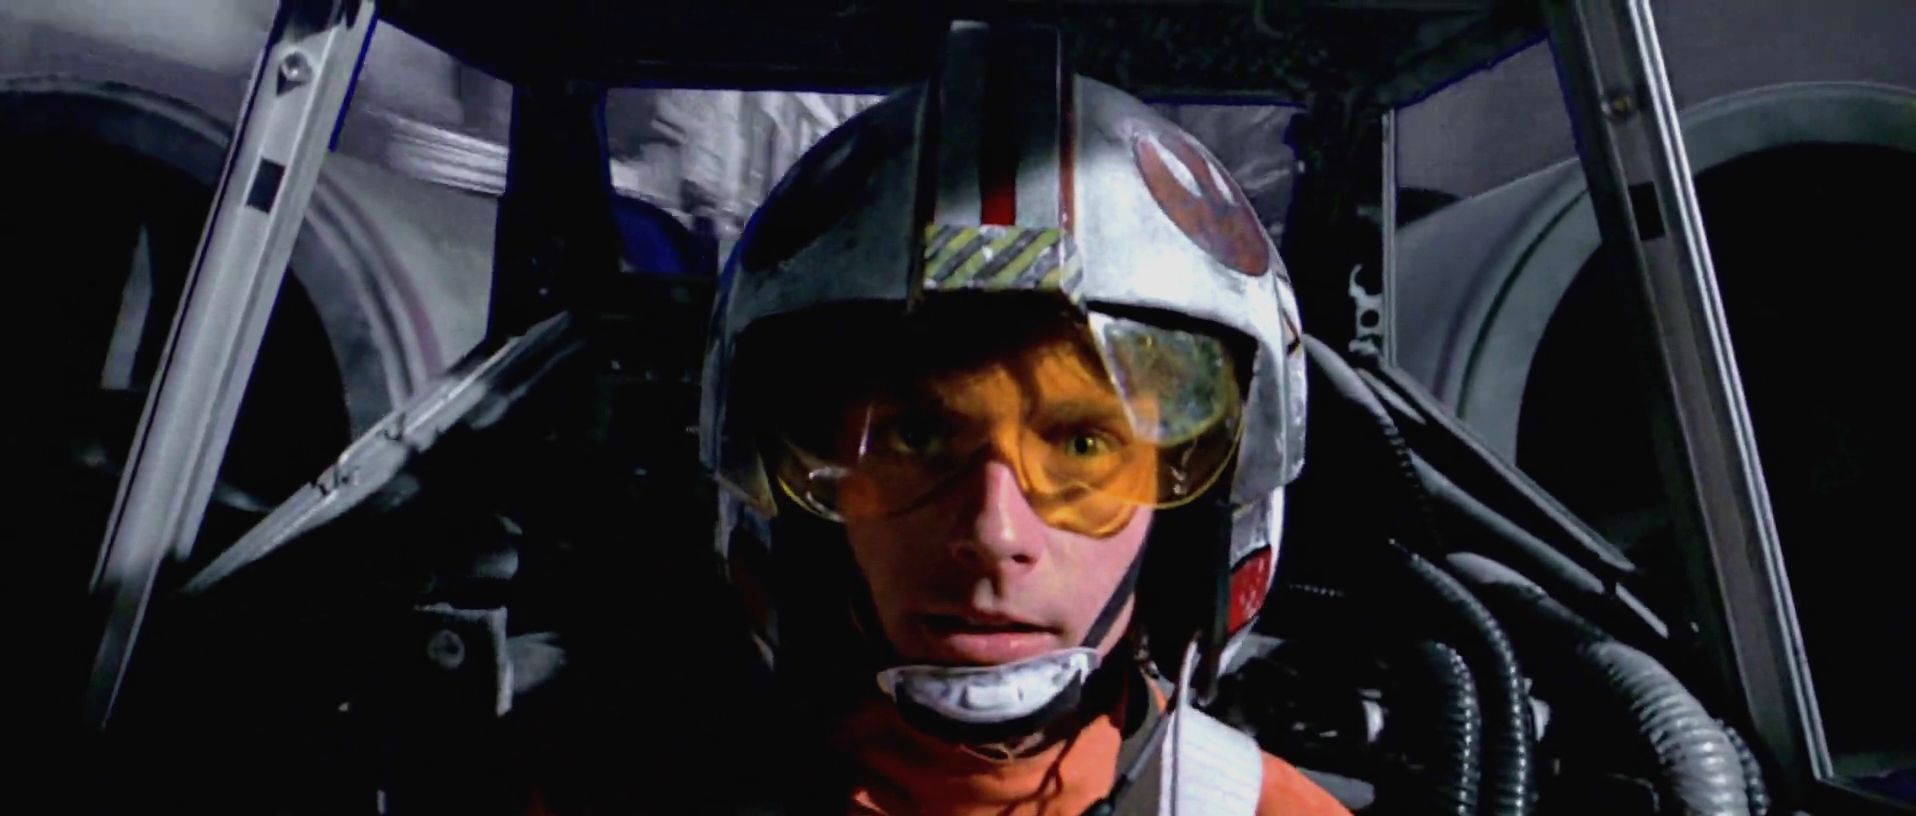 Luke Skywalker blowing up the Death Star Blank Meme Template